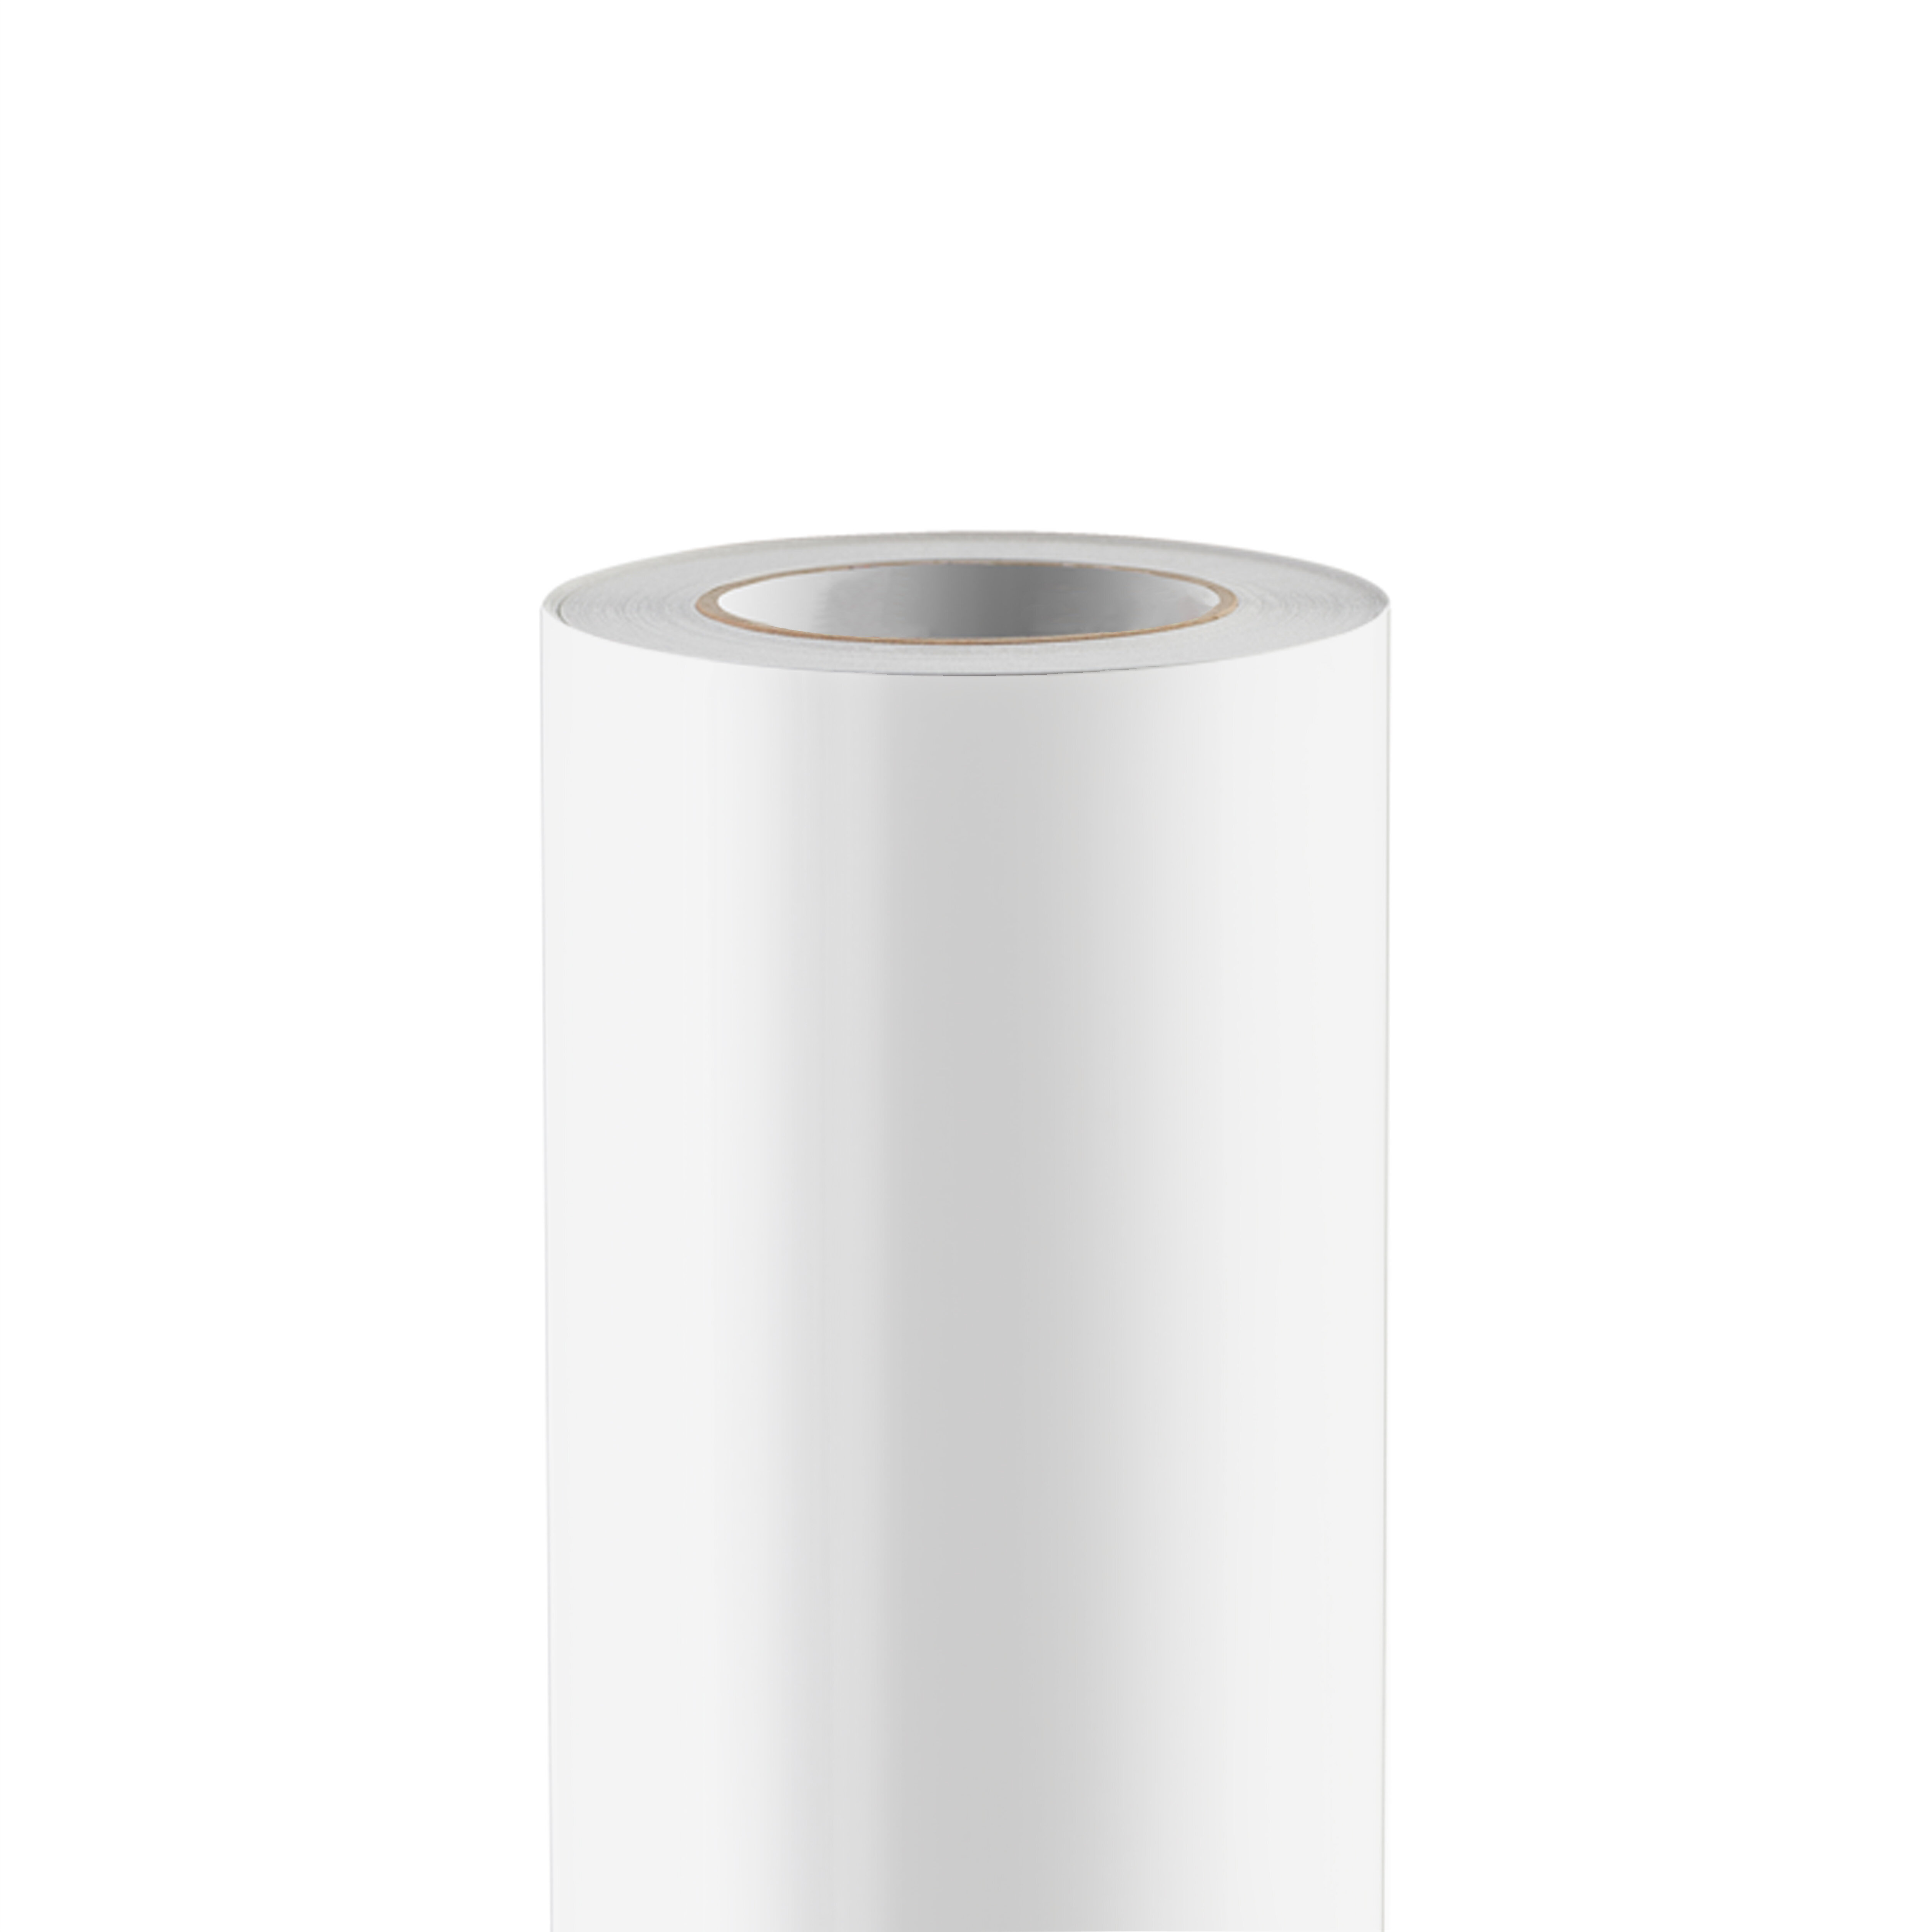 Fin de série - HydroSol PET backlit blanc brillant 1524 mm x 30 M 200 µ